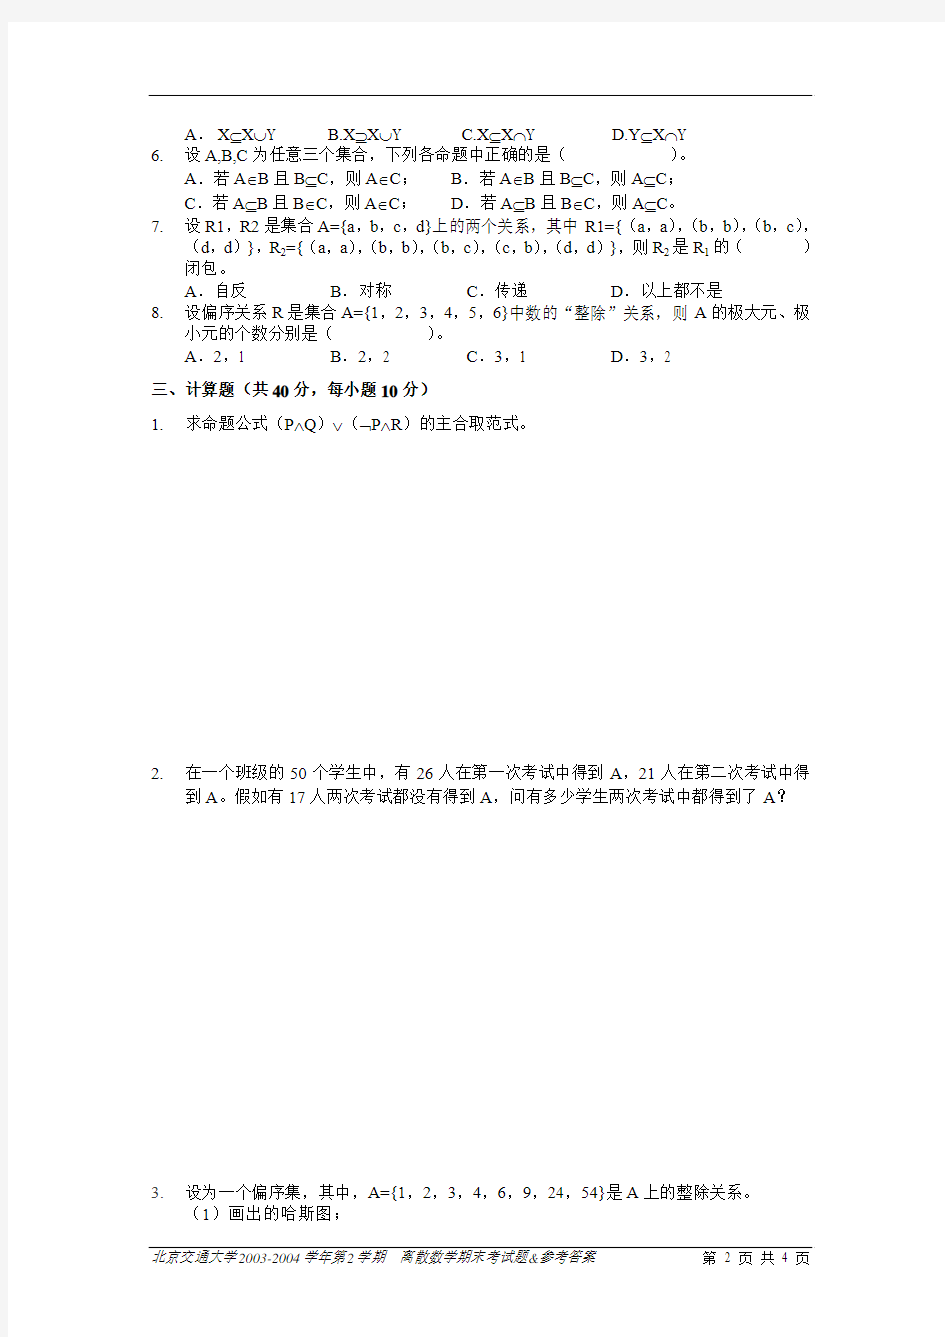 北京交通大学离散数学期末考试题-05-06-1-B-公选-试卷